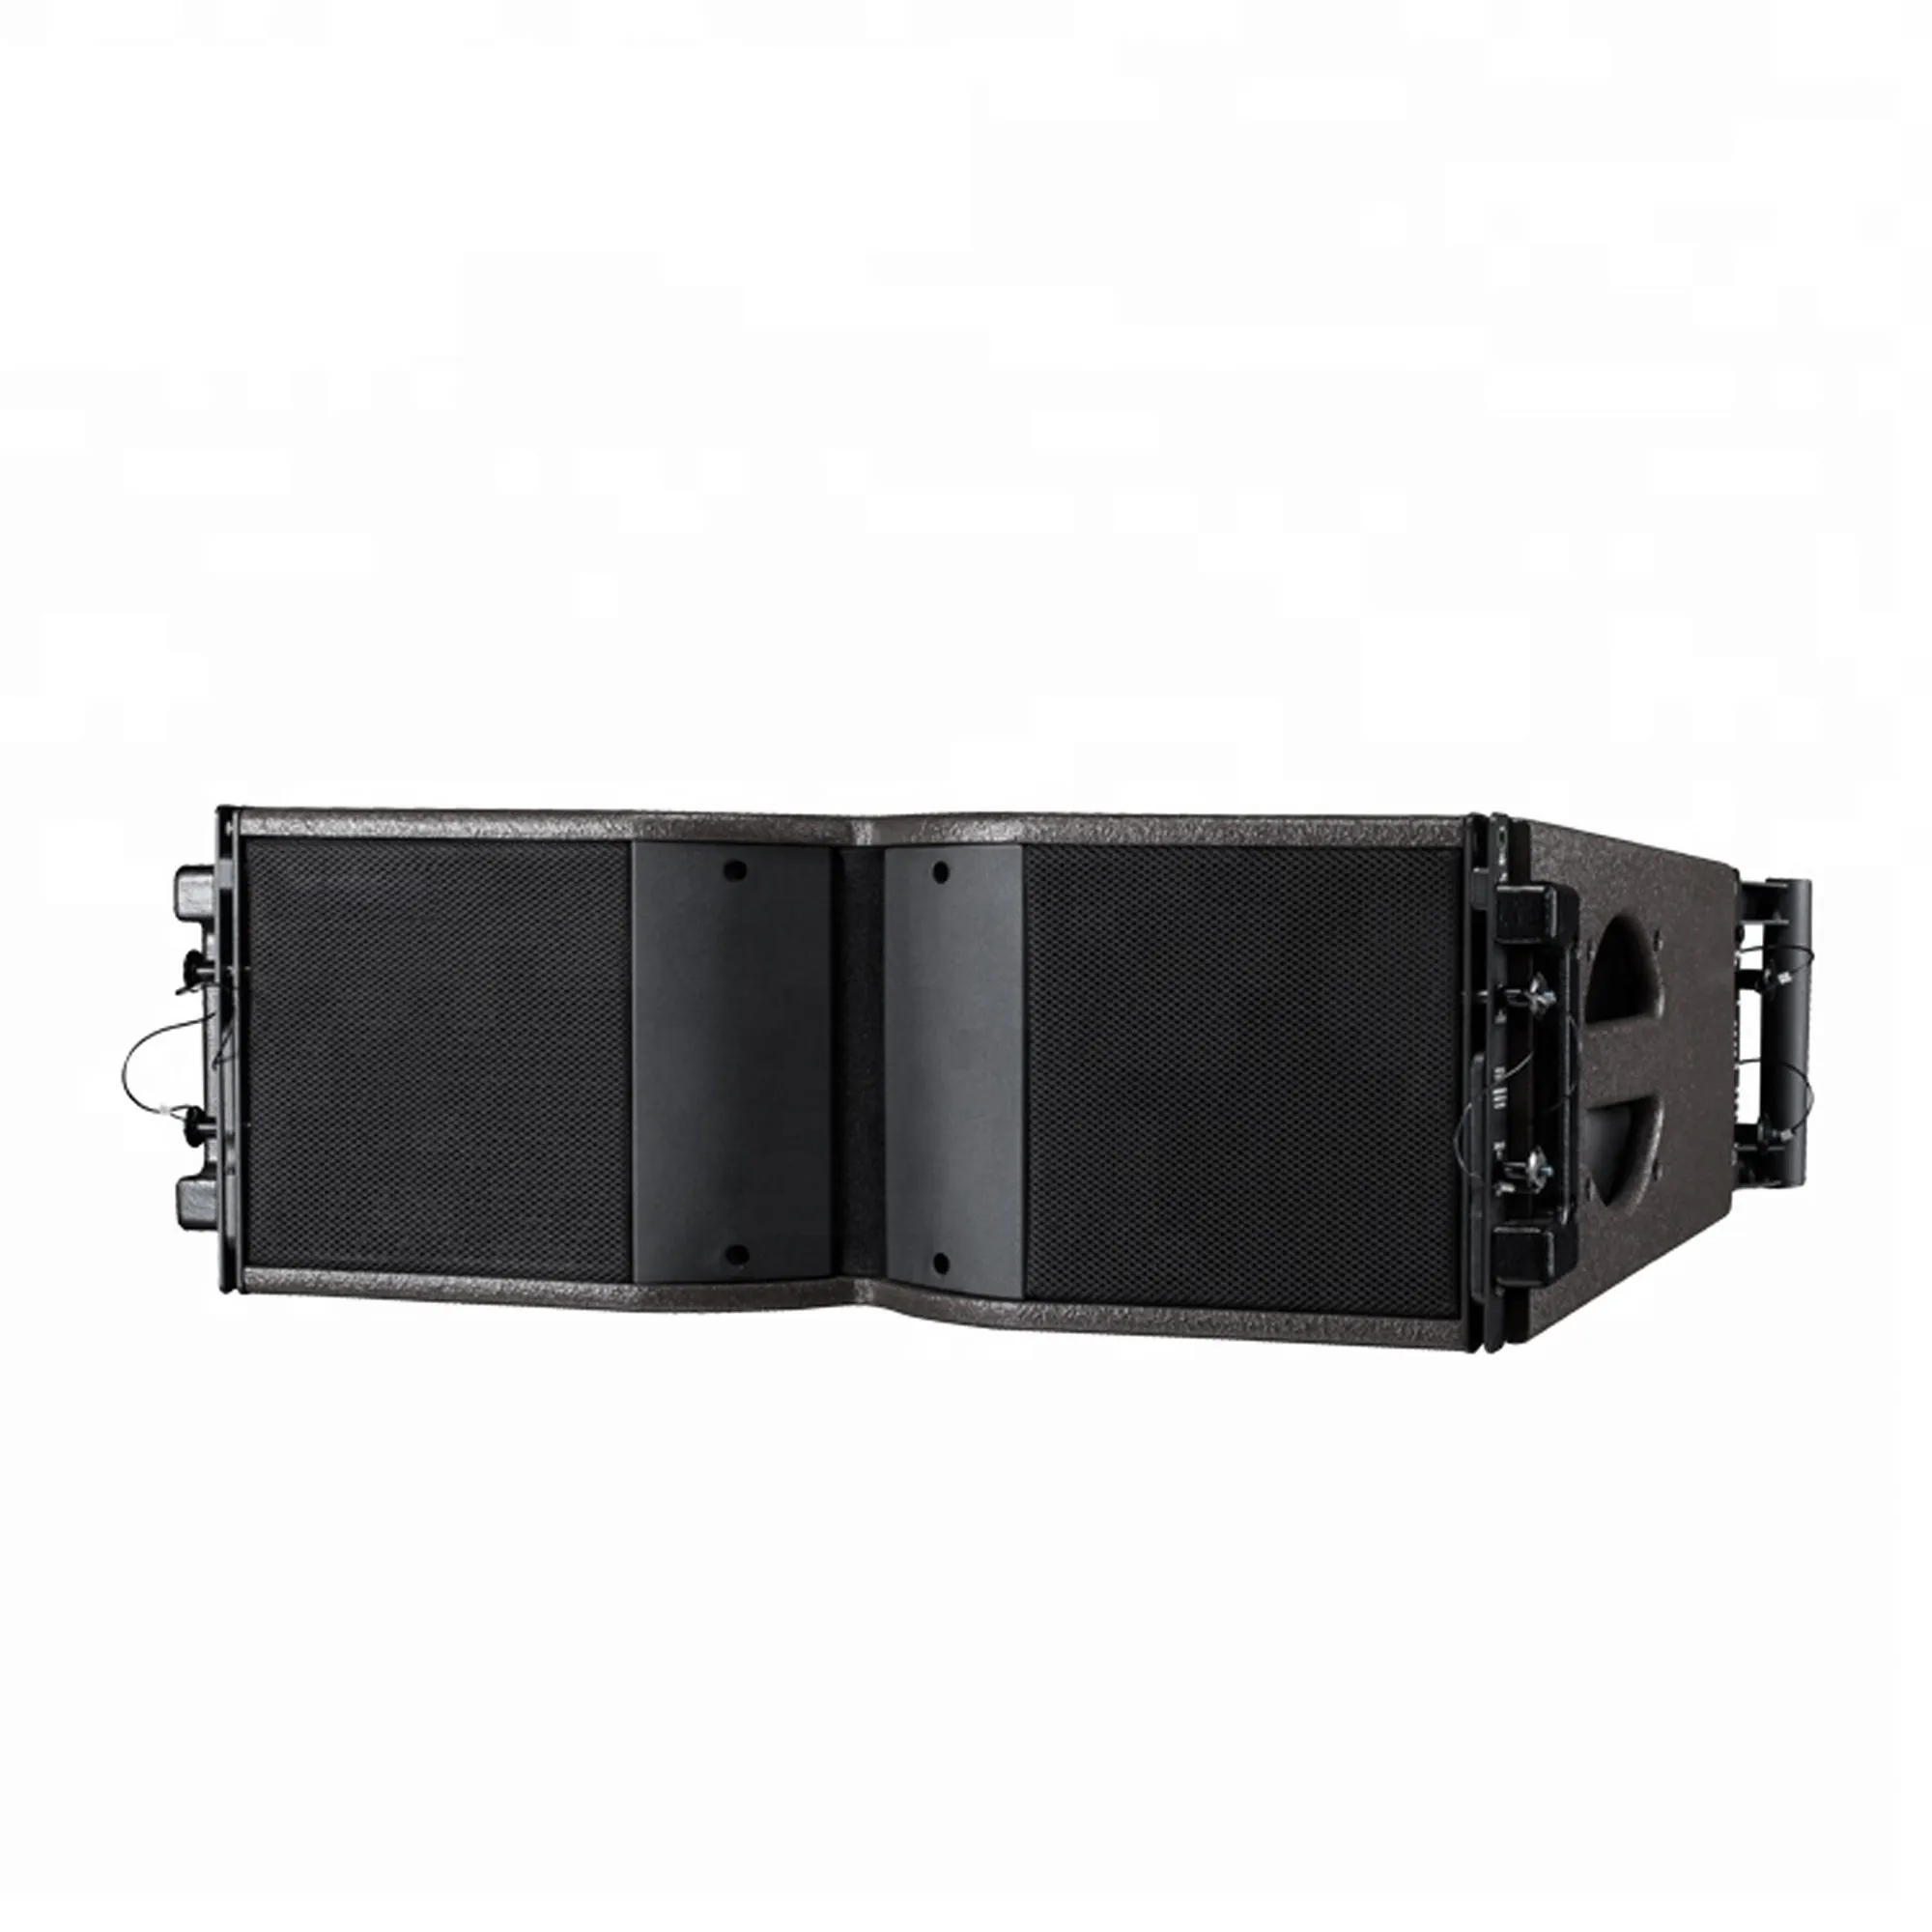 K10 speaker profesional, speaker audio pro profesional suara surround, sistem dalam dan luar ruangan pasif dual 10"